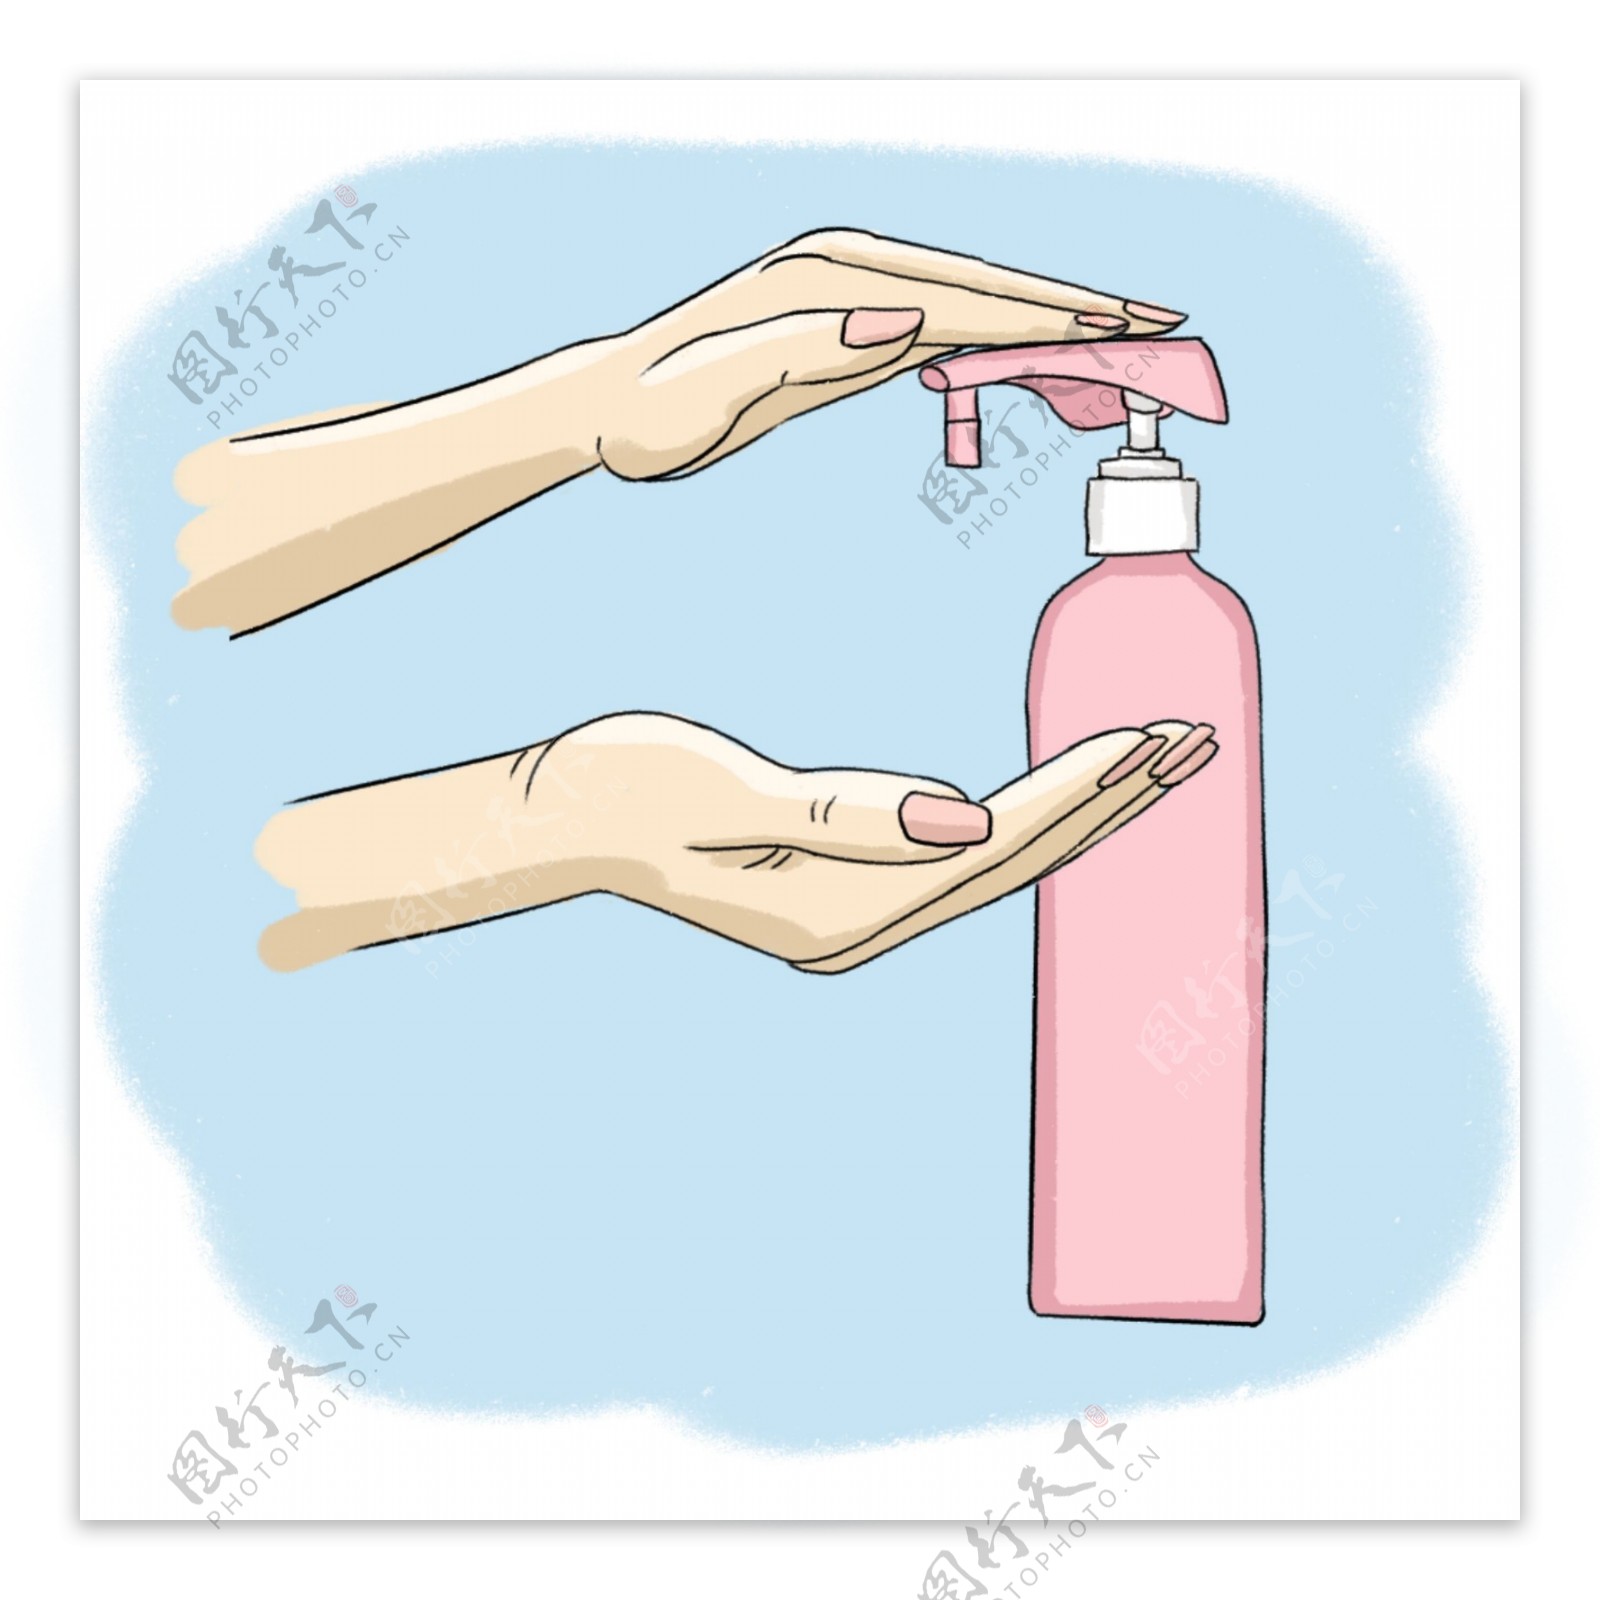 洗手液